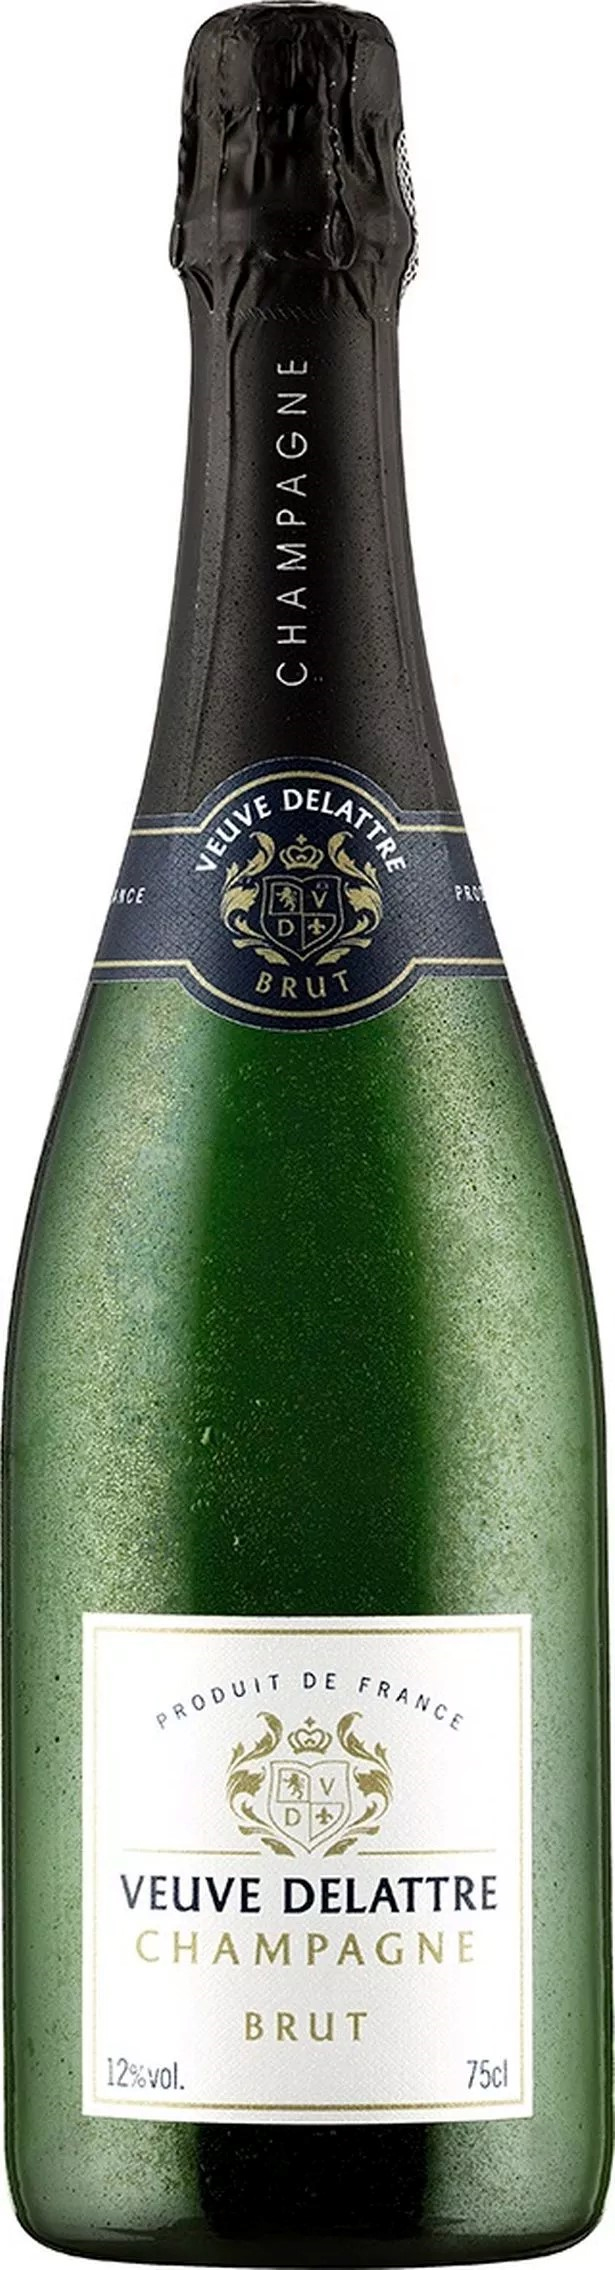 Dieser französische Champagner ist ein absolutes Silvester-Schnäppchen, da er doppelt so teuer sein sollte